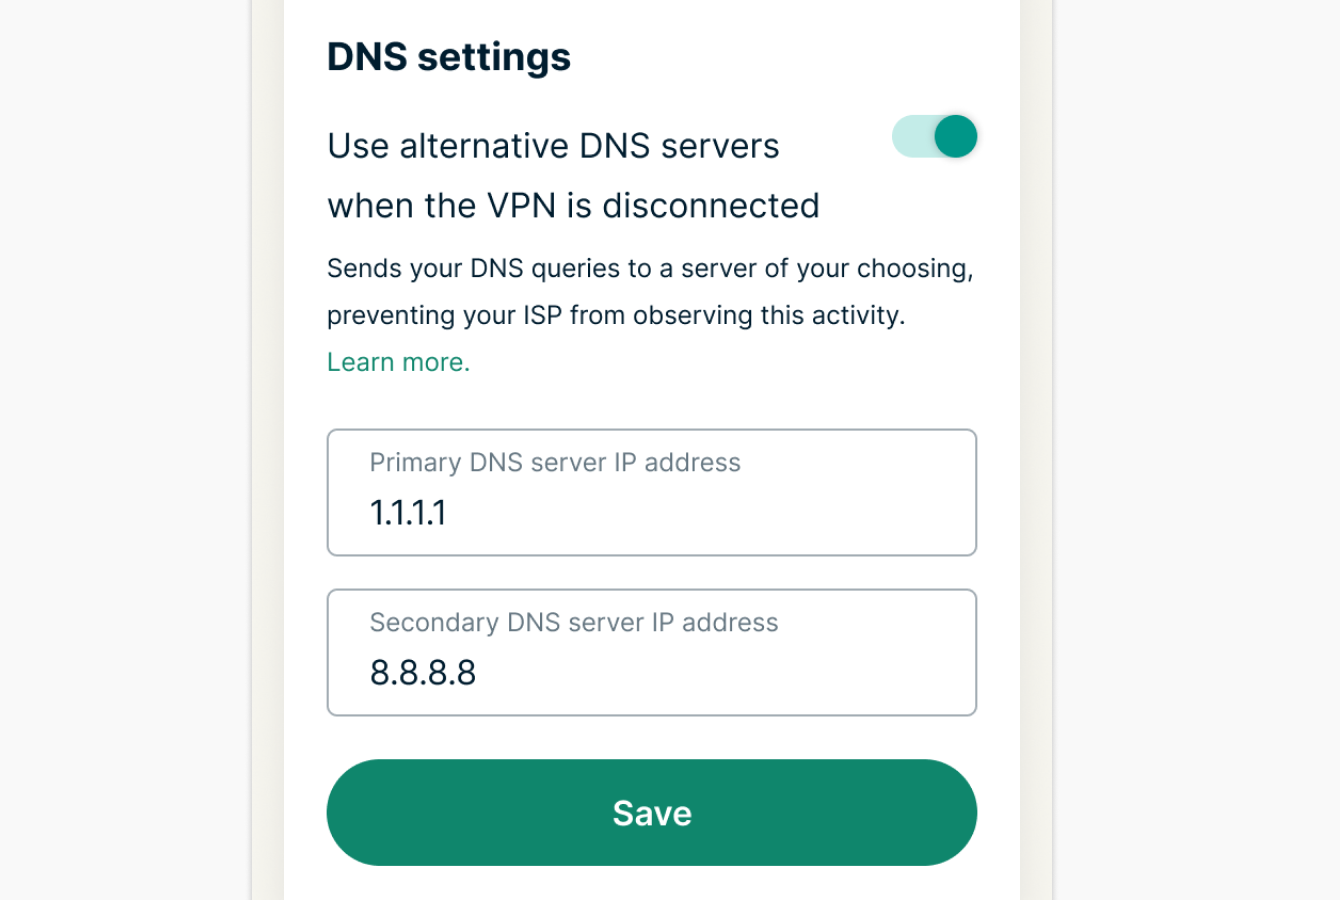 อินเตอร์เฟซ ExpressVPN ที่กำลังแสดงการตั้งค่า DNS ด้วยเซิร์ฟเวอร์ DNS ทางเลือกที่เปิดใช้งานอยู่